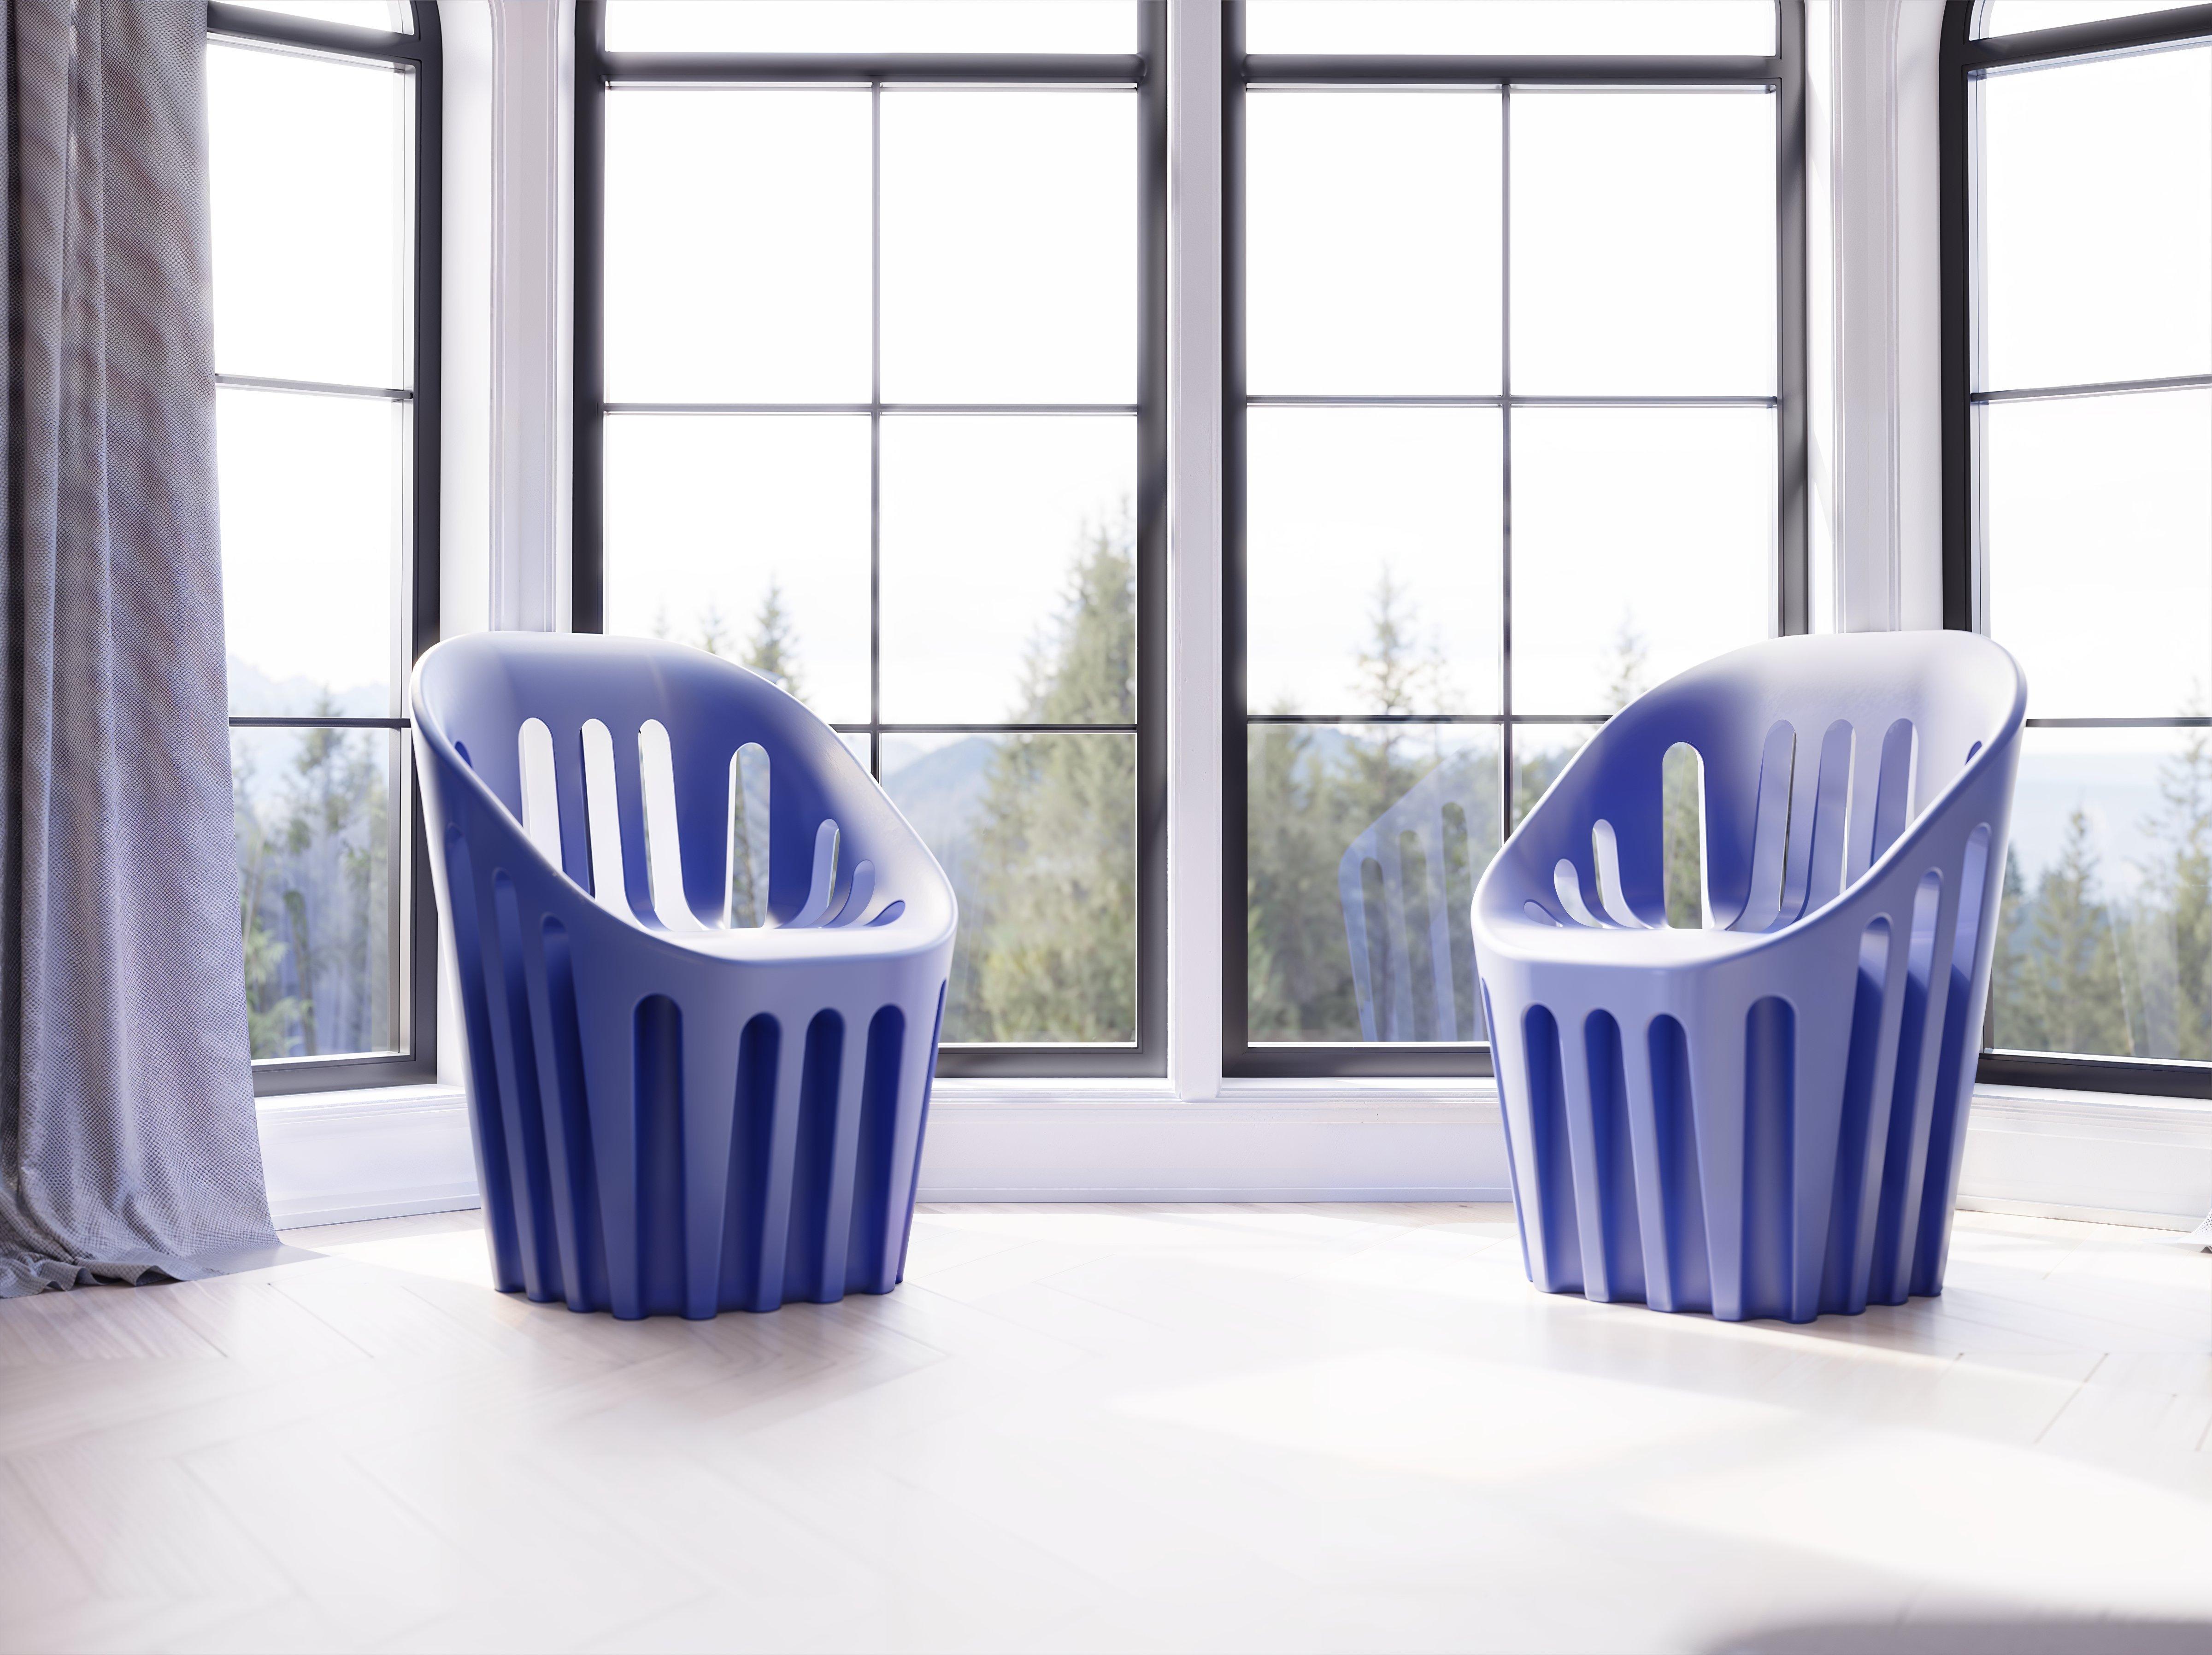 Coliseum-Stuhl in Taubengrau von Alvaro Uribe
Abmessungen: T 65 x B 66 x H 86 cm. Sitzhöhe: 45 cm.
MATERIALEN: Polyethylen.
Gewicht: 11 kg.

Erhältlich in verschiedenen Farbvarianten. Dieses Produkt ist für die Verwendung im Innen- und Außenbereich